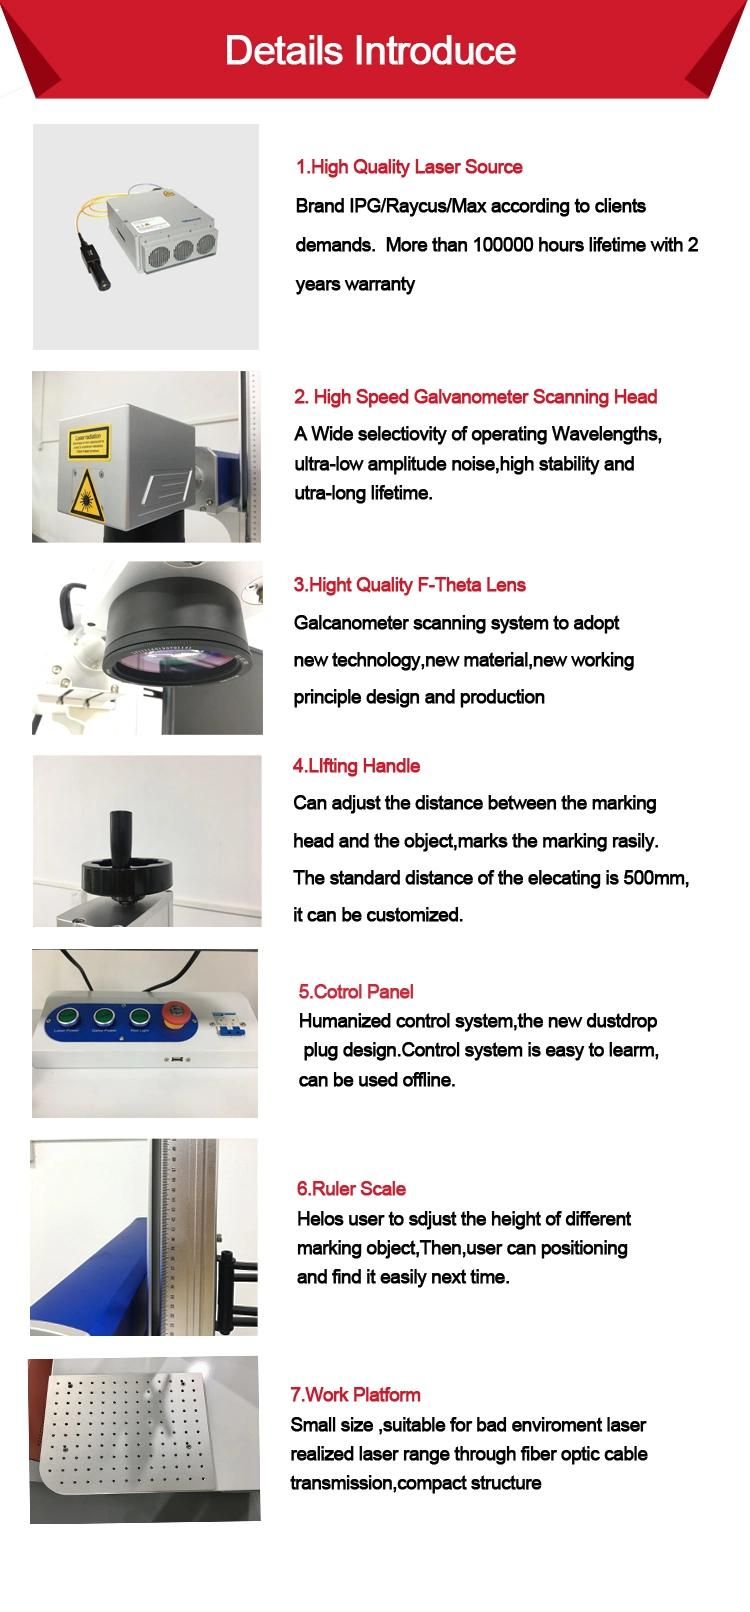 Handheld Type Fiber Laser Marking Machine, Handheld Laser Marker, Portable Metal Engraving Machine